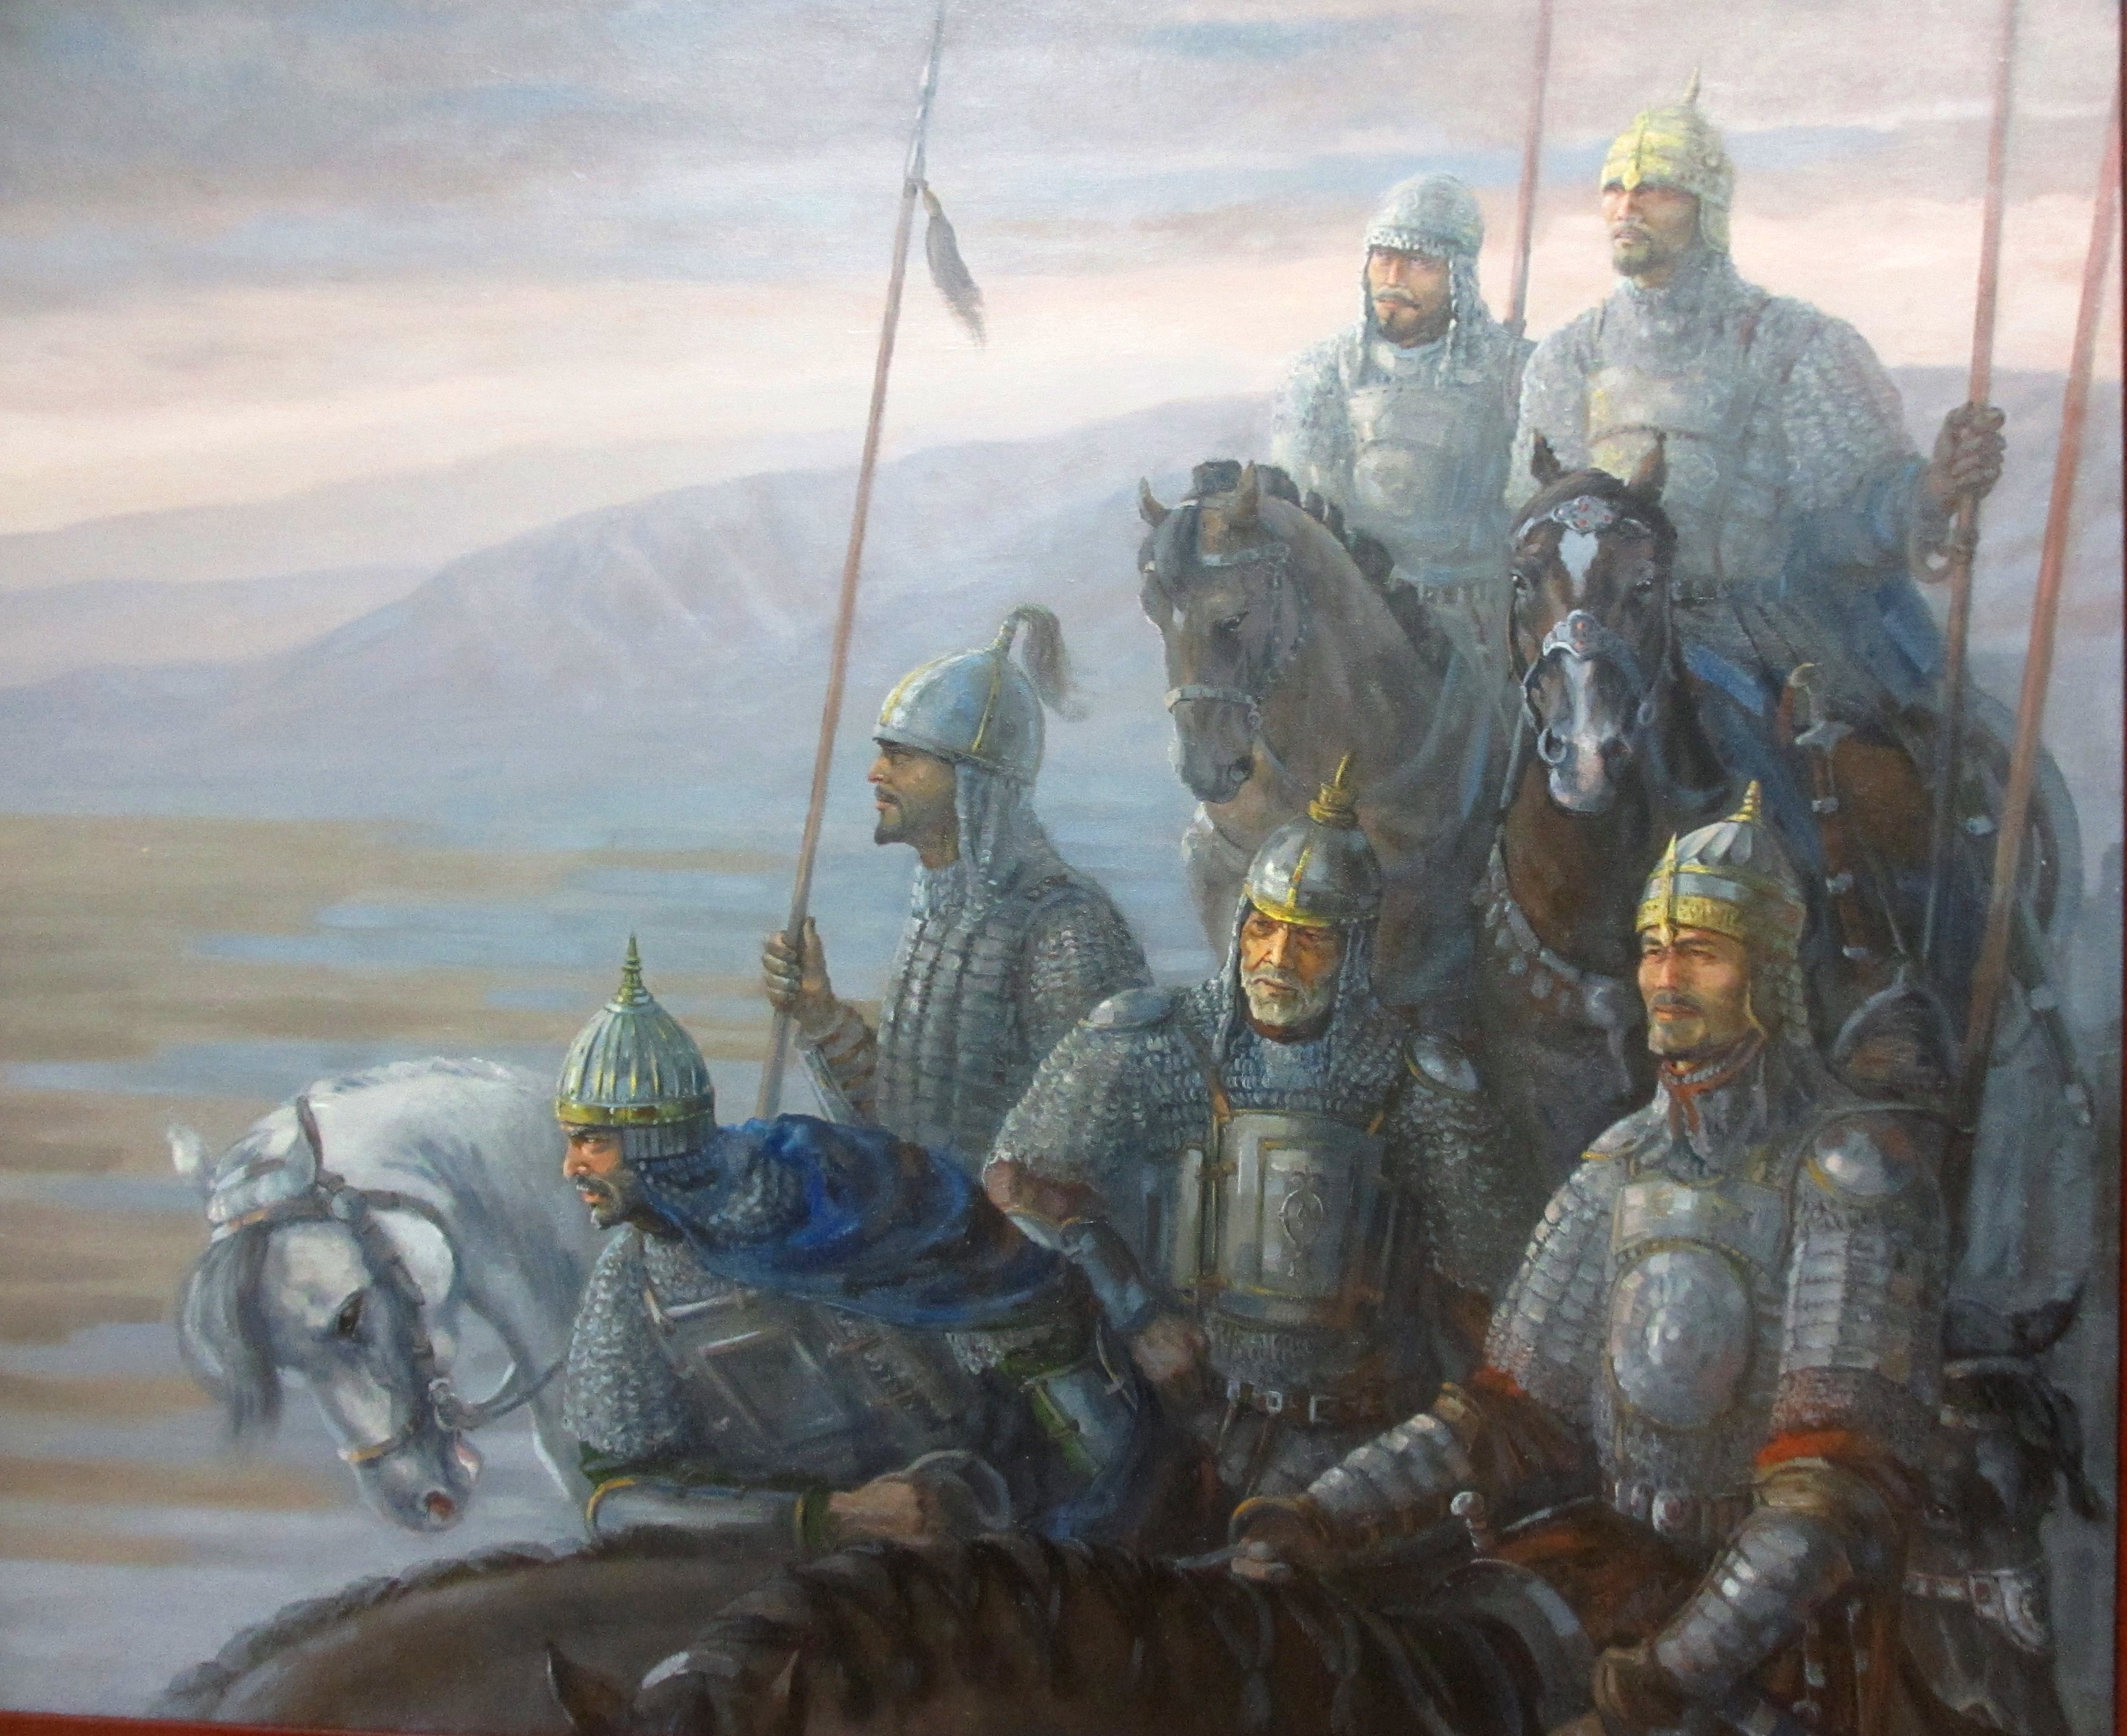 Казахские ханы история